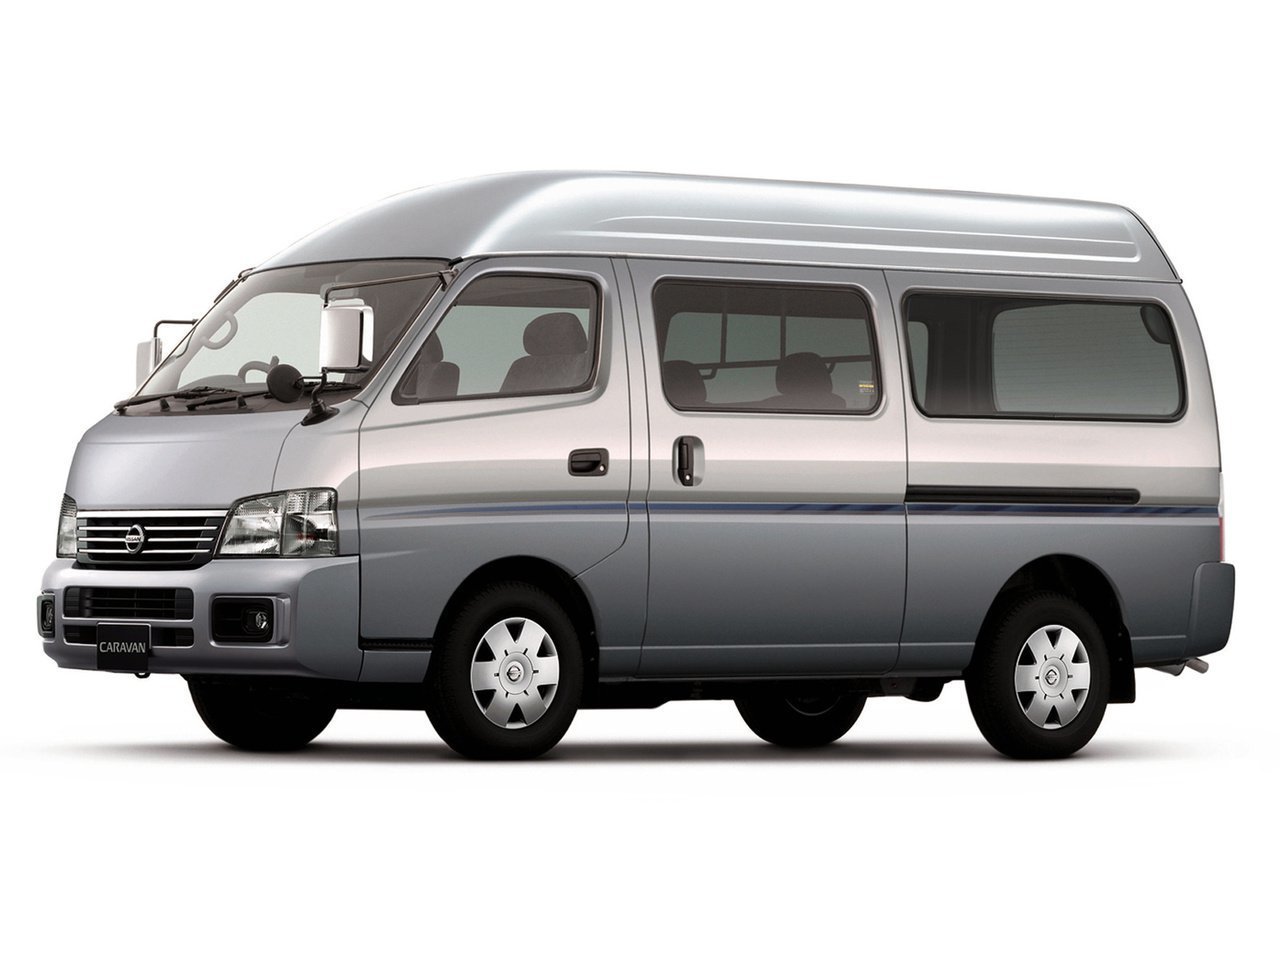 Установка ГБО на Nissan Caravan